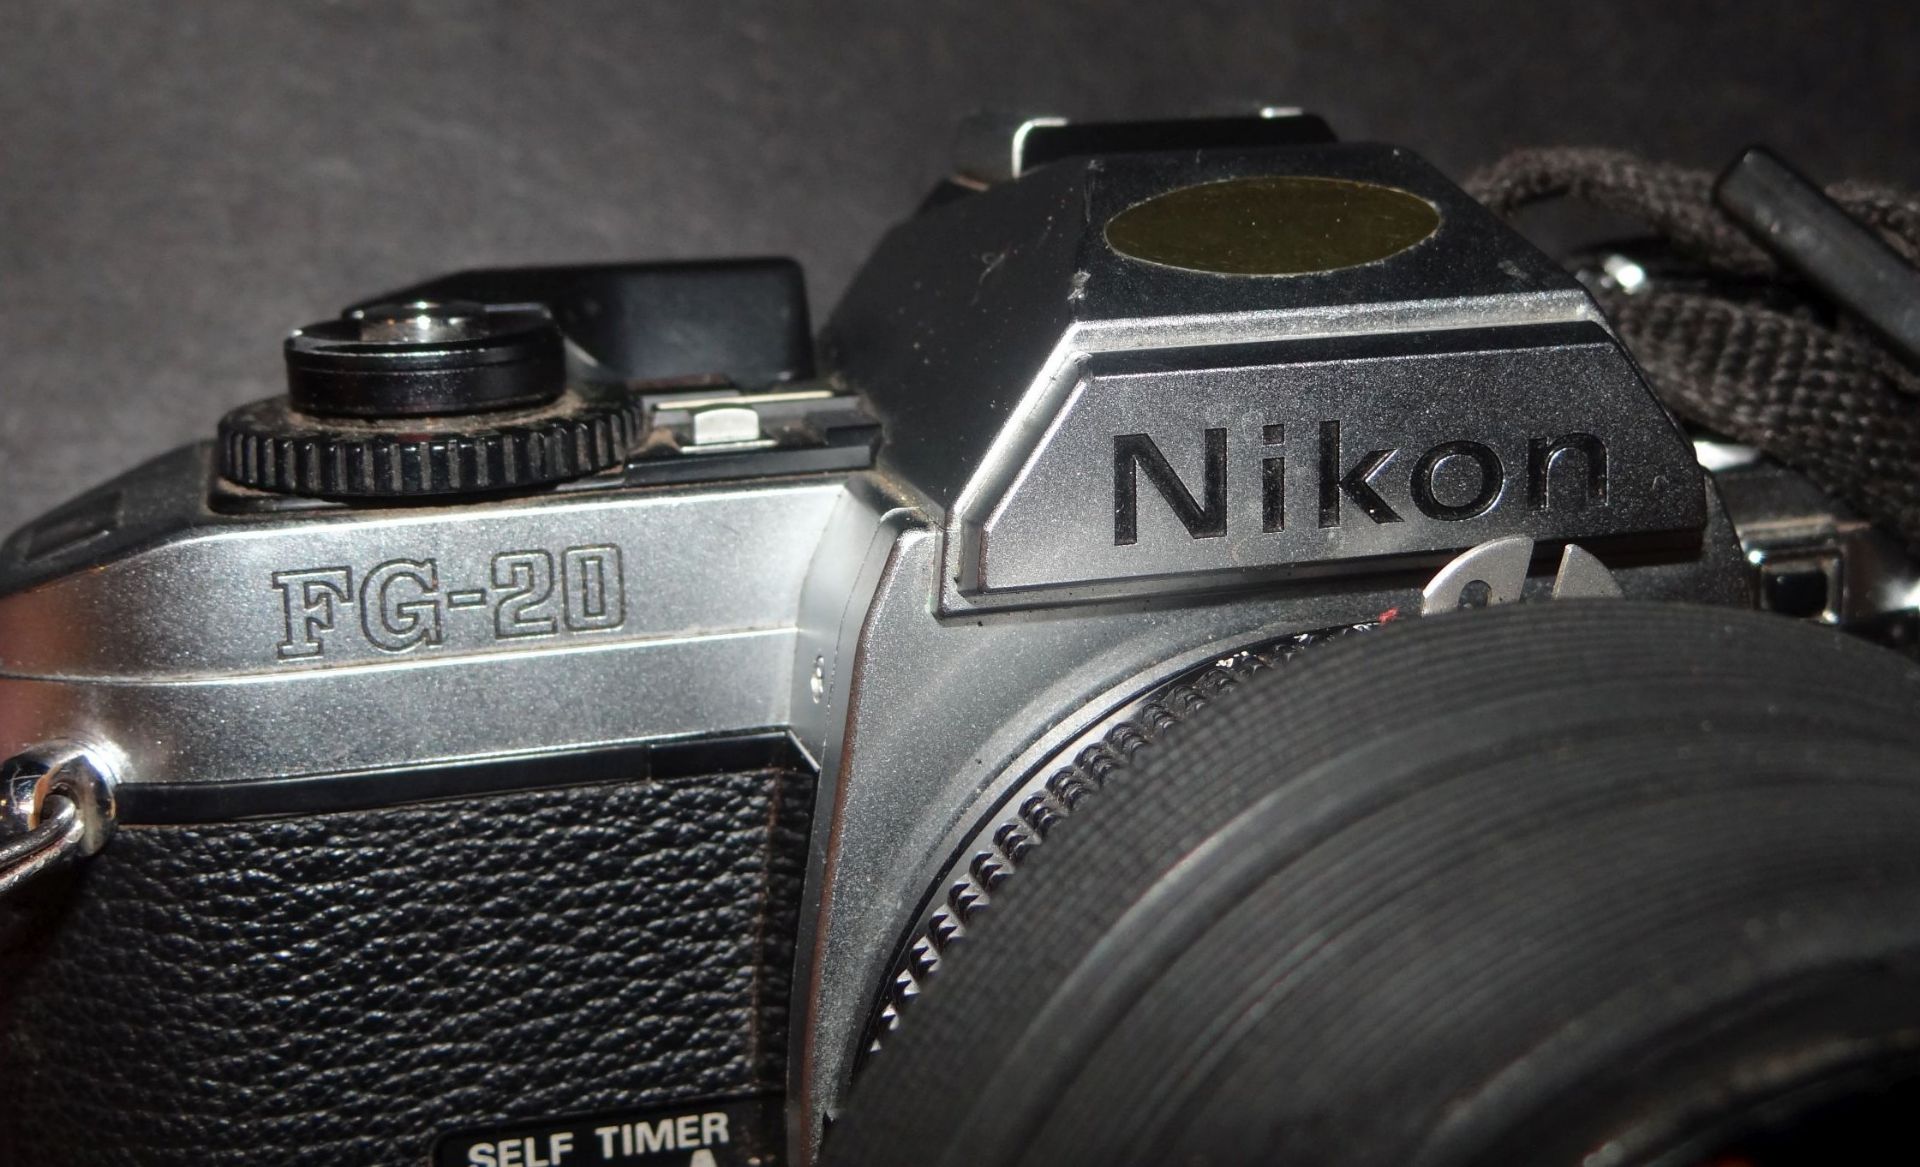 Spiegelreflexkamera "Nikon FG 20" in Tasche, Alters-u. Gebrauchsspuren, Nikon Objektiv - Bild 5 aus 5